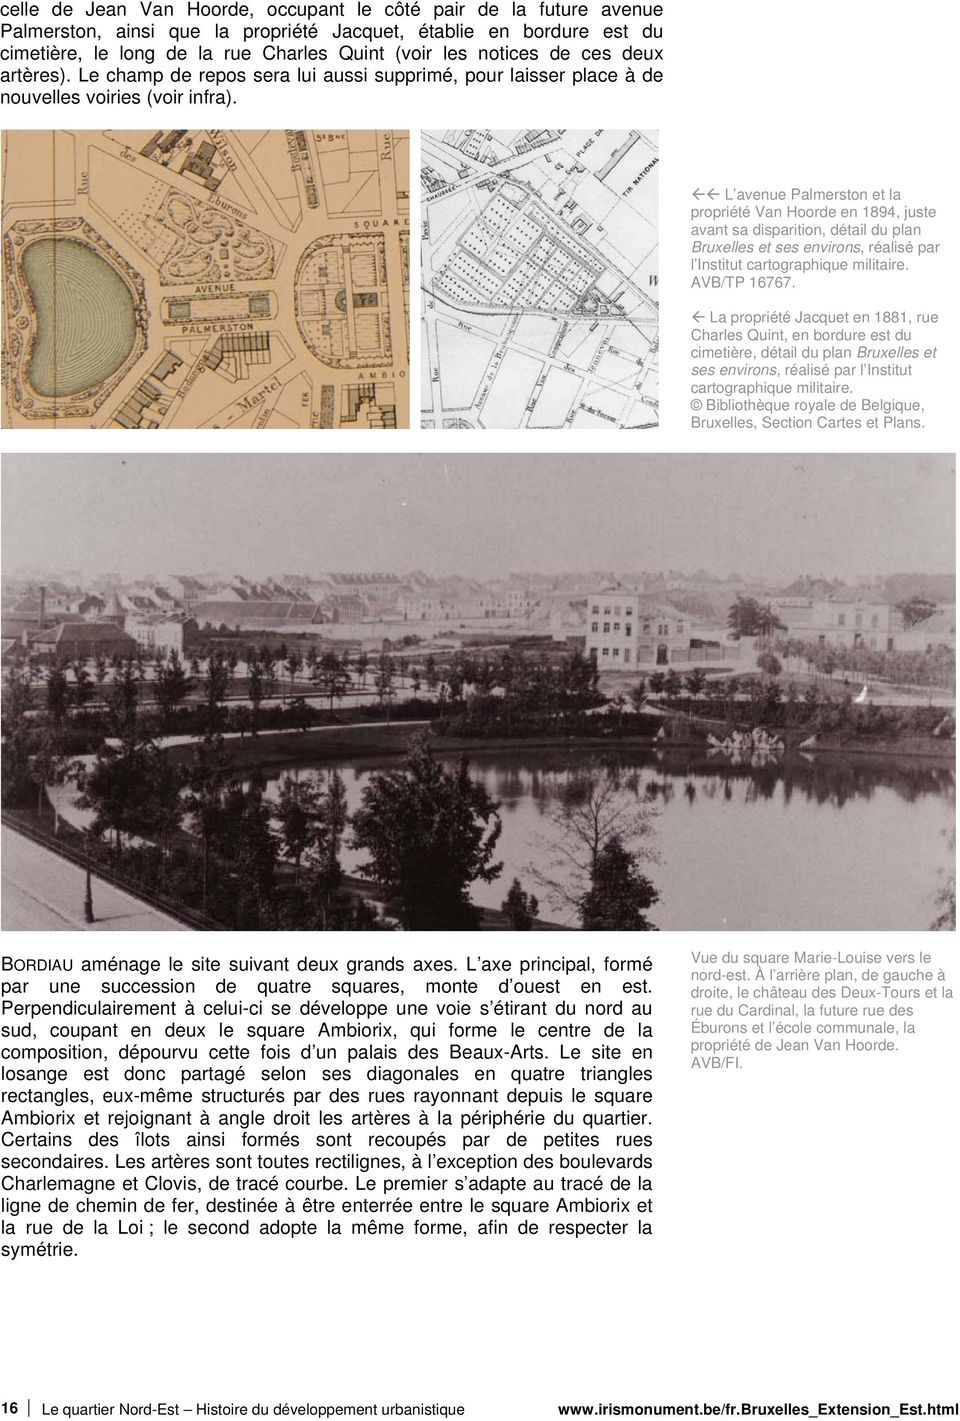 L avenue Palmerston et la propriété Van Hoorde en 1894, juste avant sa disparition, détail du plan Bruxelles et ses environs, réalisé par l Institut cartographique militaire. AVB/TP 16767.